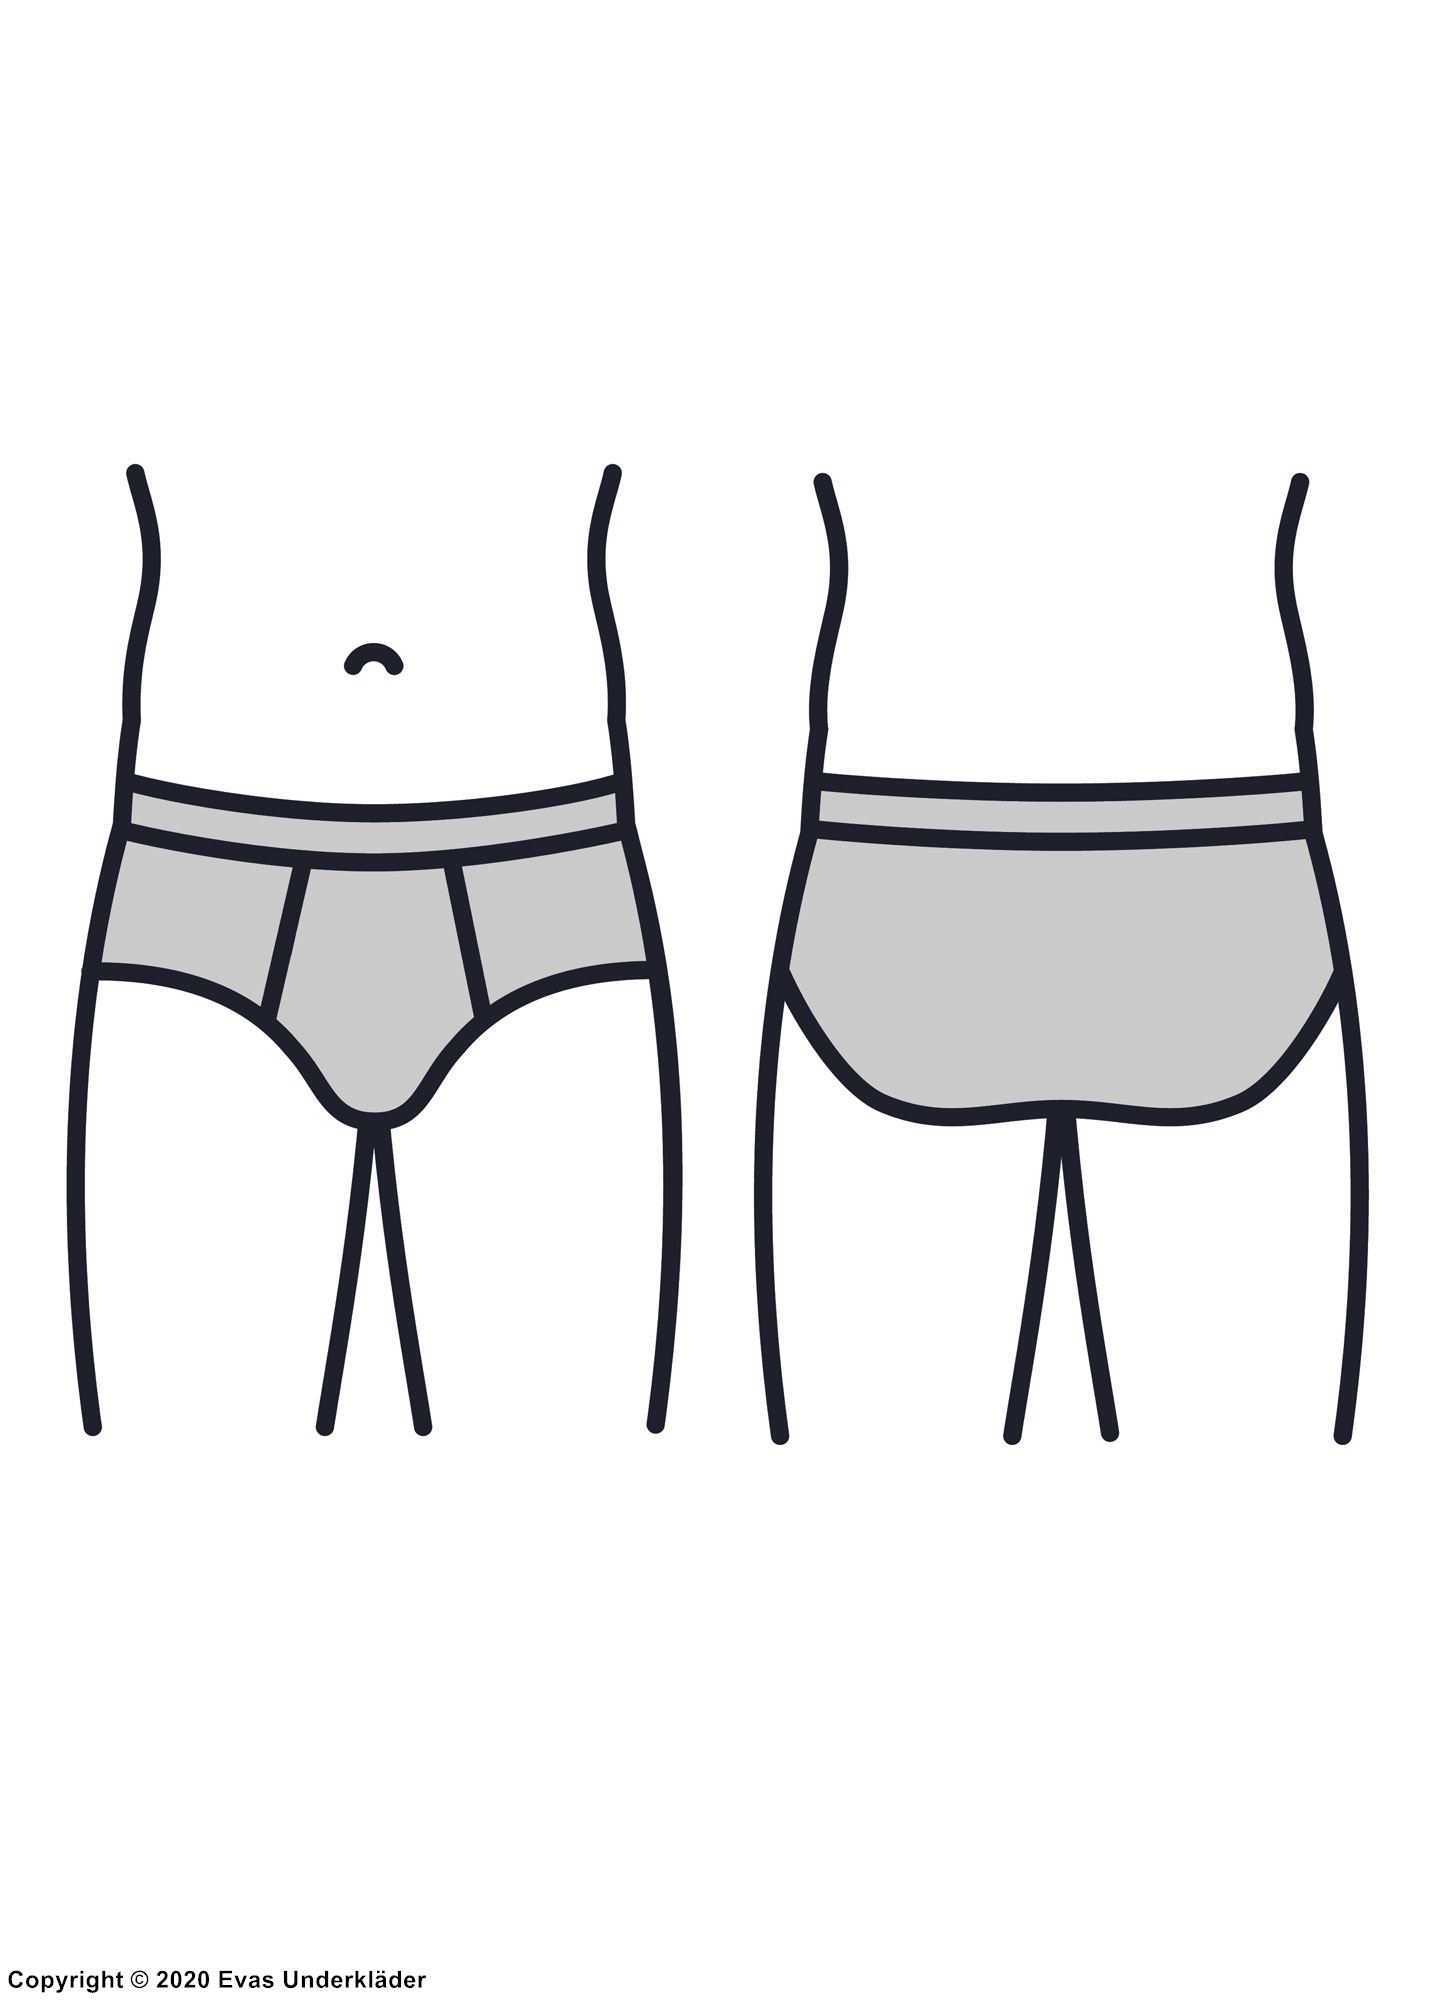 Men's briefs, anatomical contour pouch, geometric pattern